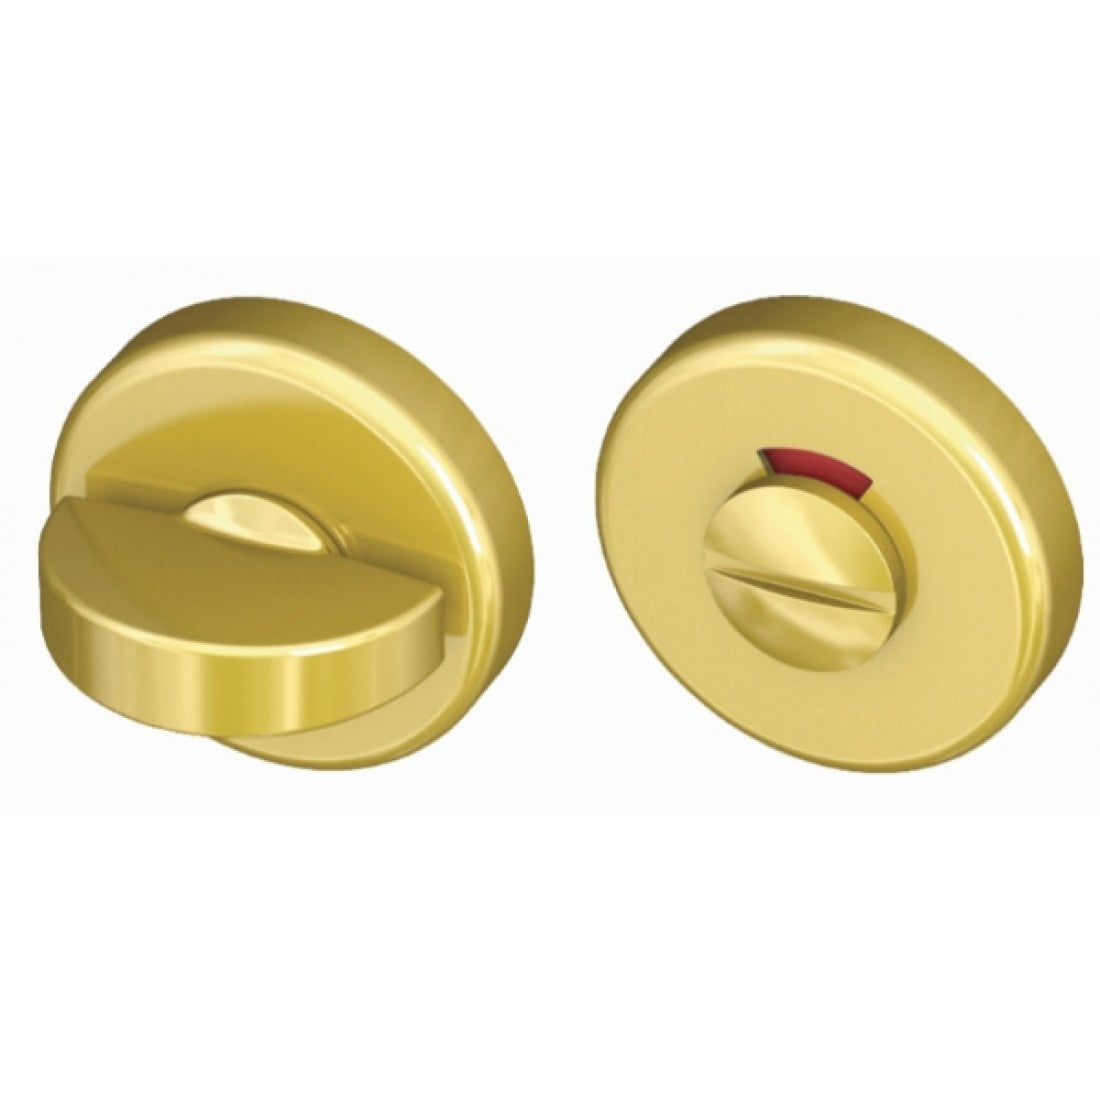 Toiletsluiting rond 52mm met vrij/ bezet indicator Antique Gold met BIOV coating